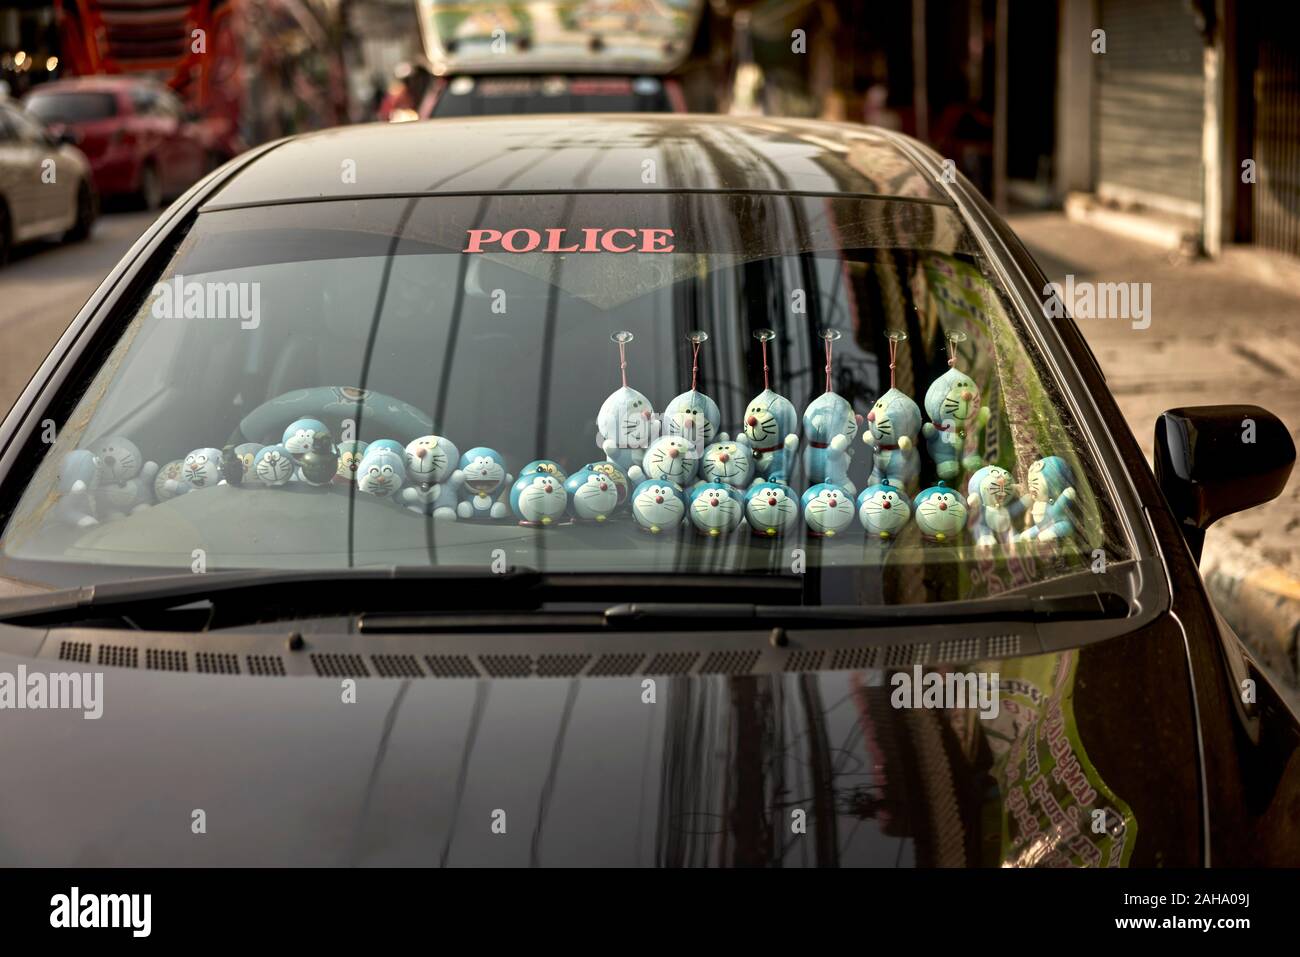 Behindert, Cluster von Doraemon Puppen in einem Auto Windschutzscheibe Stockfoto